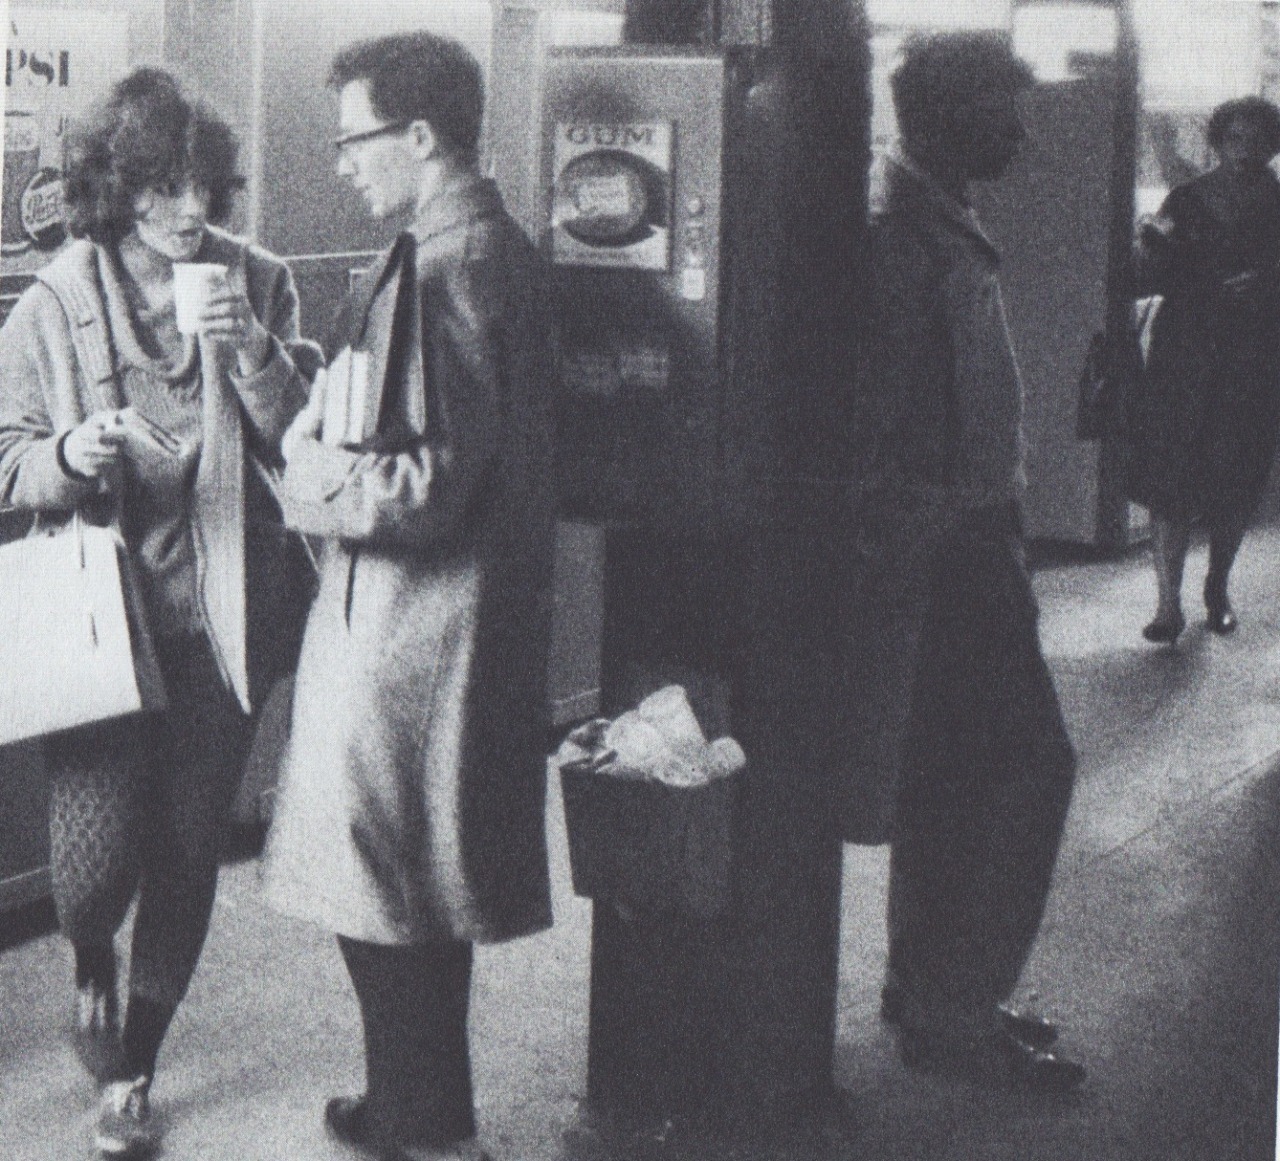 NYC Subway, 1962 by Garry Winogrand